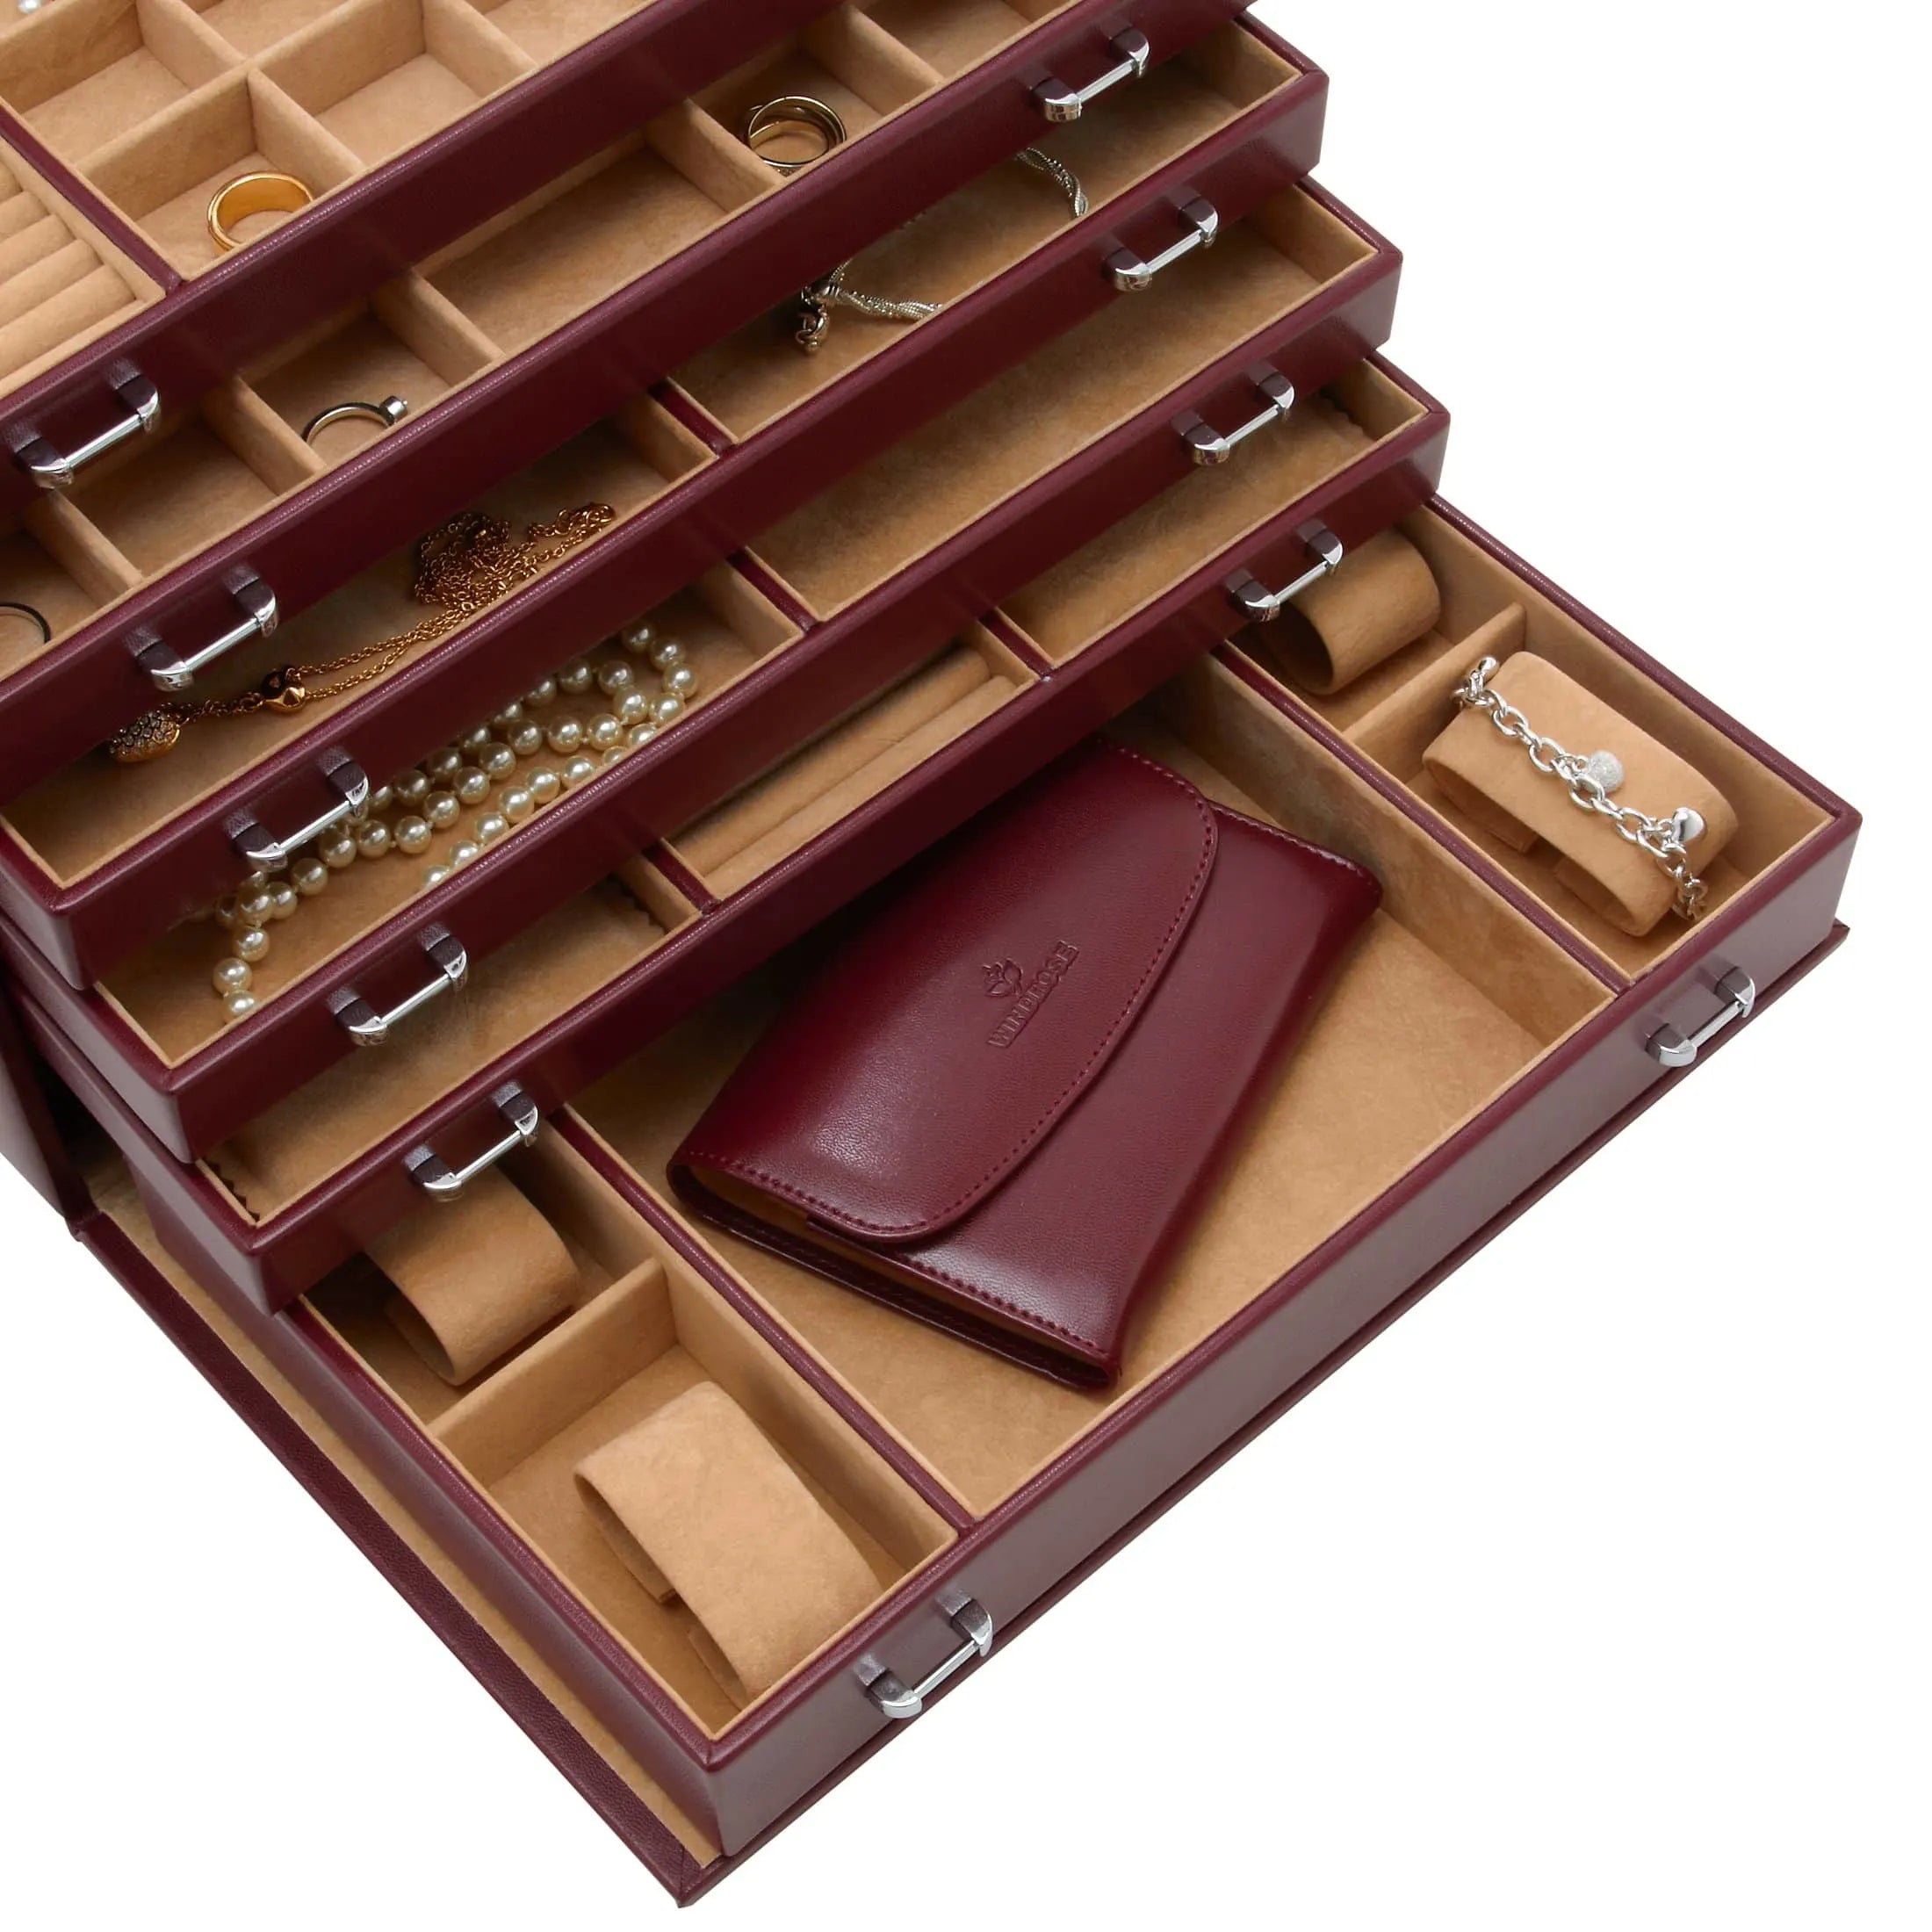 Windrose Merino Schmuckkoffer 6 Etagen mit integrierter Schmucktasche 37 cm - rot